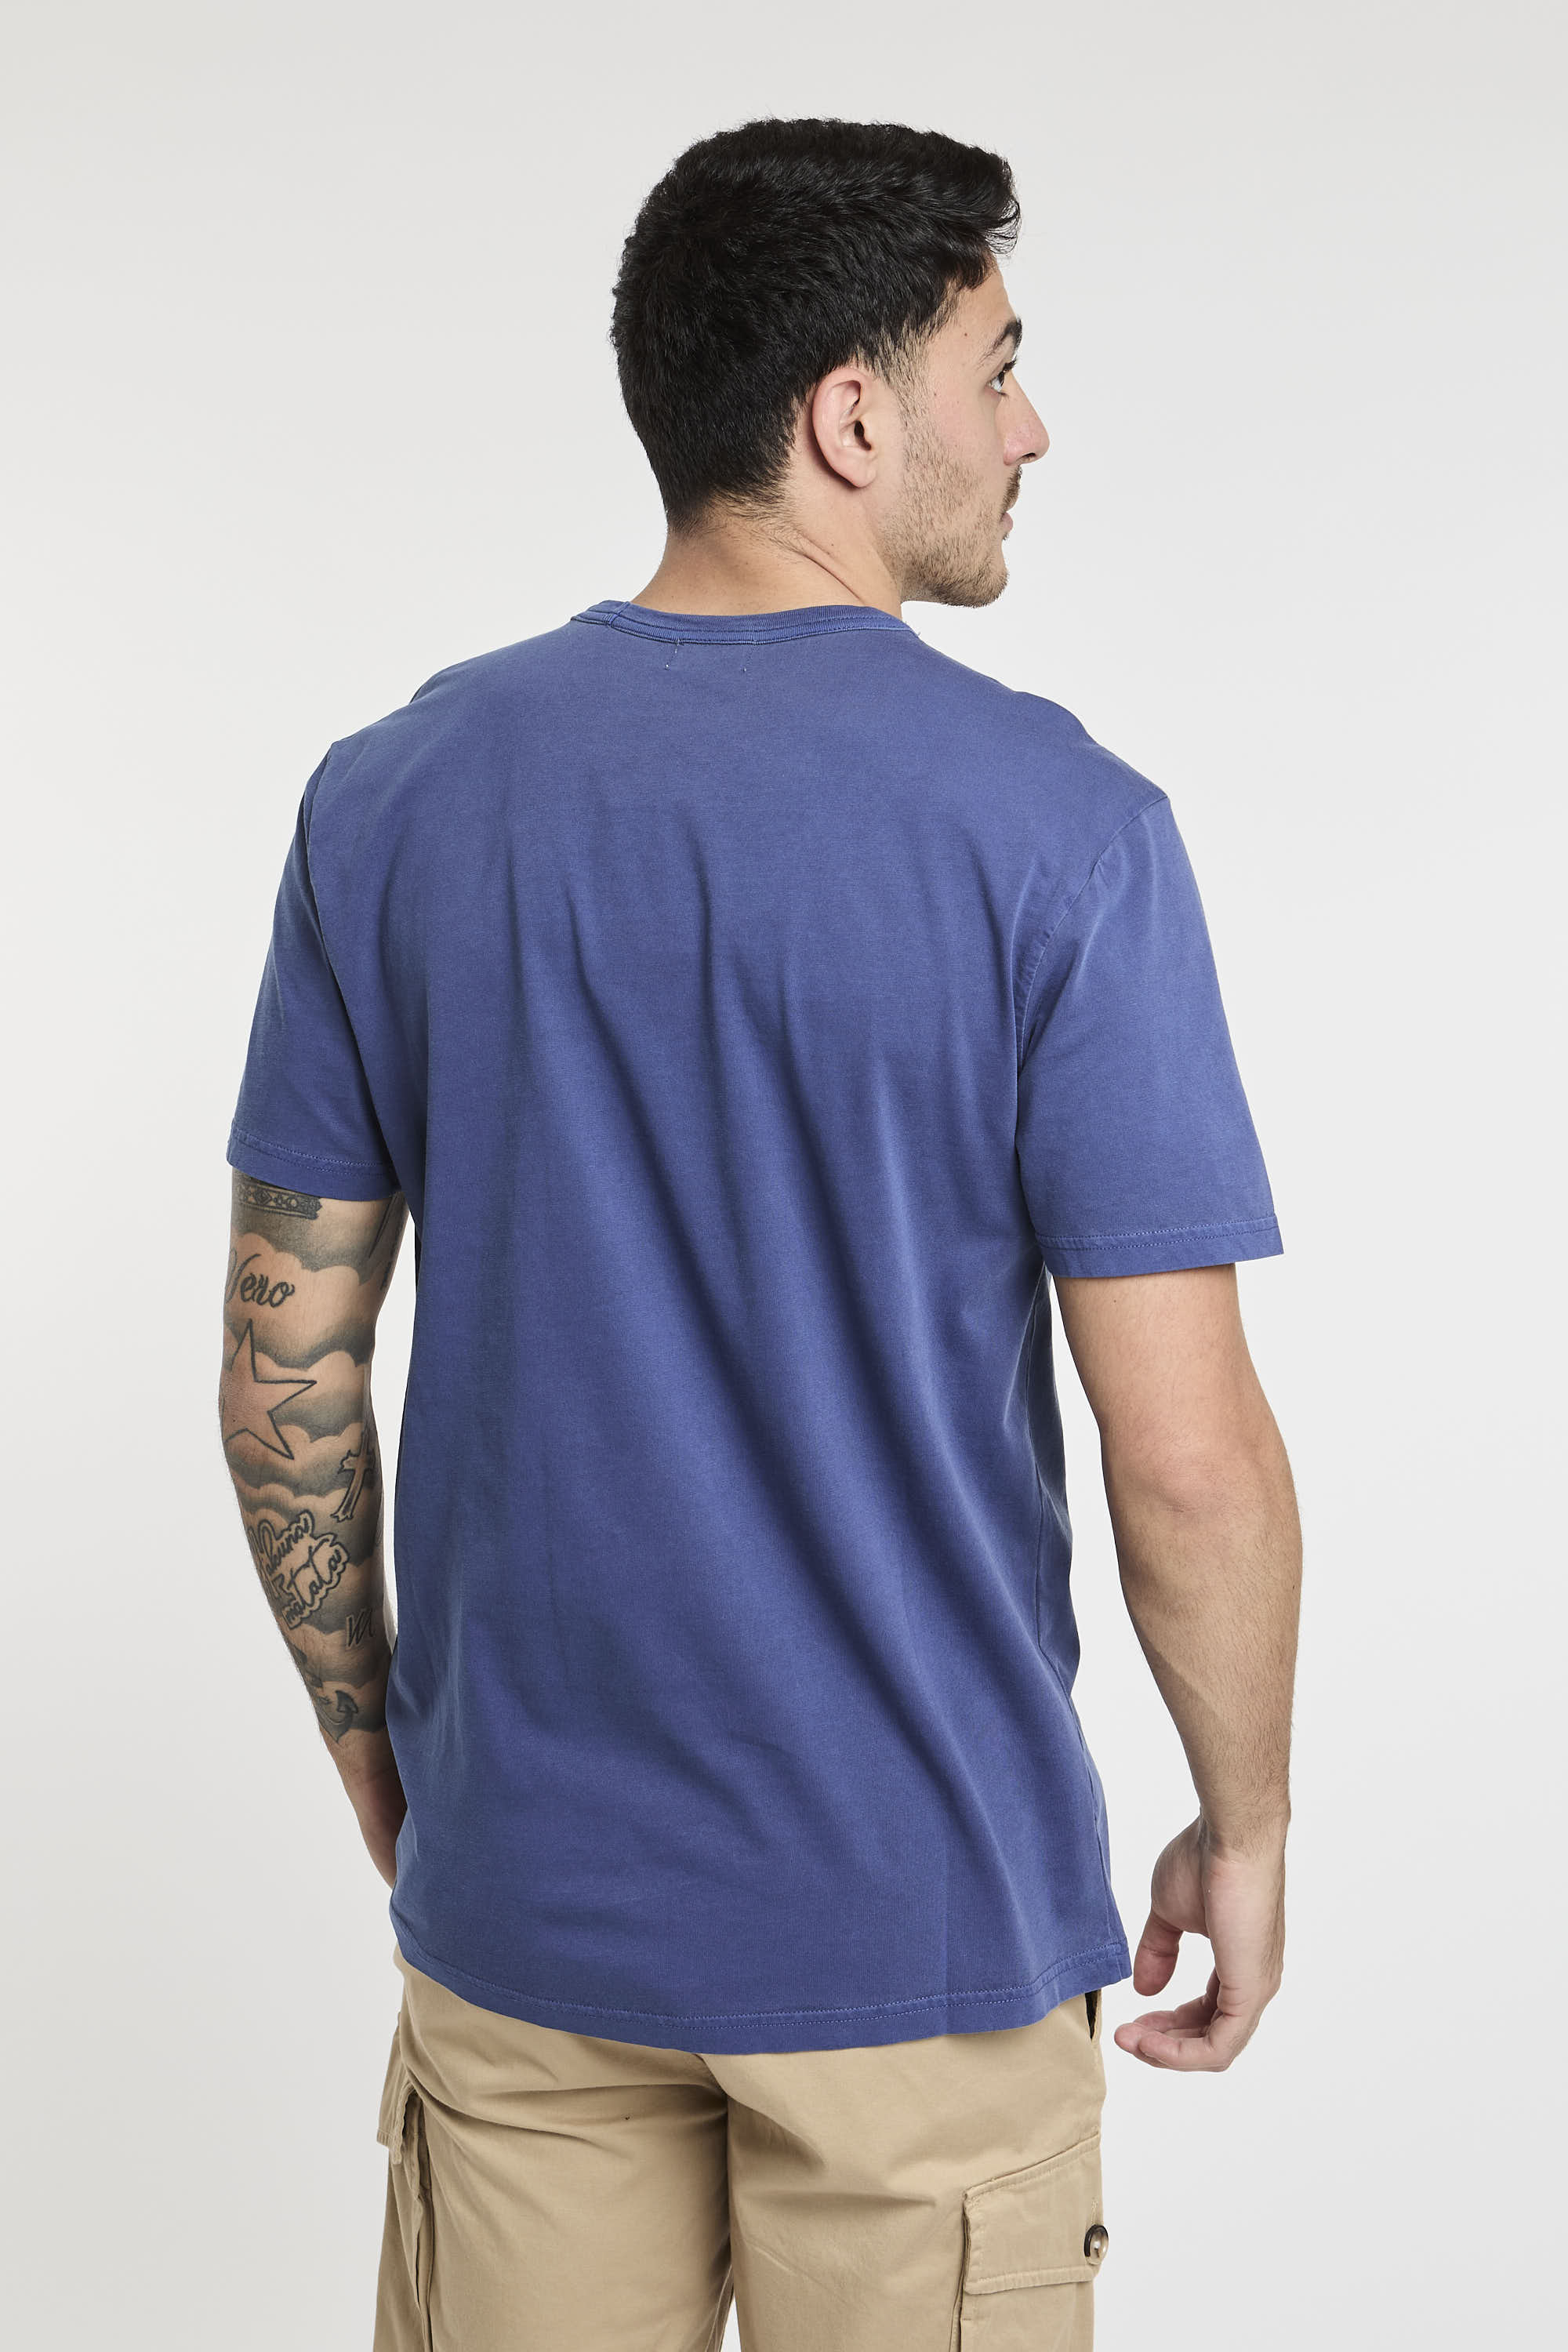 T-shirt tinta in capo in puro cotone-5